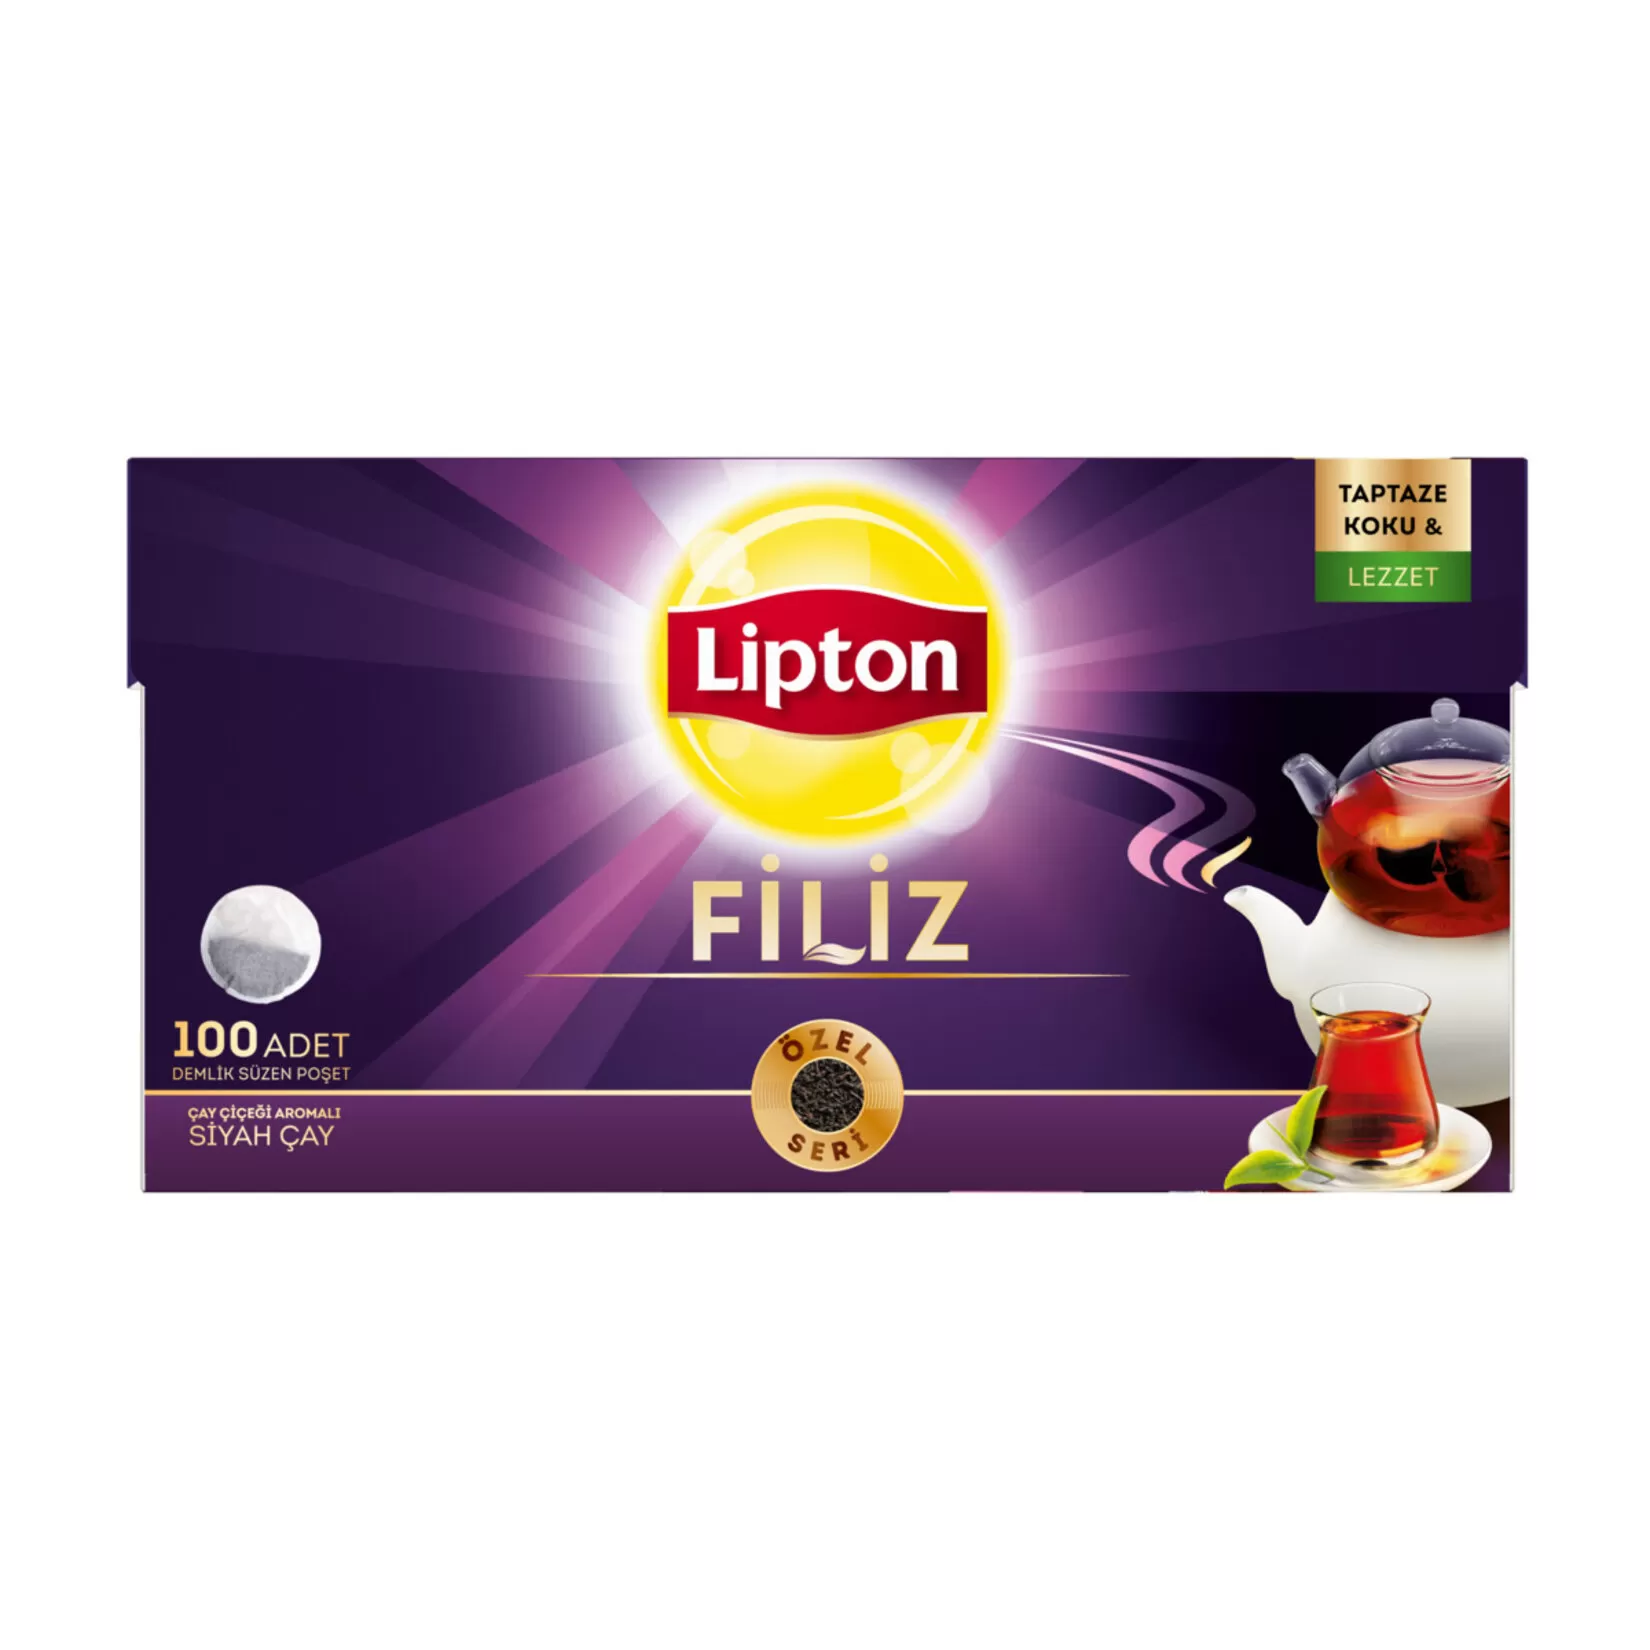 Lipton Filiz Demlik Poşet Çay 100'lü 4 Paket